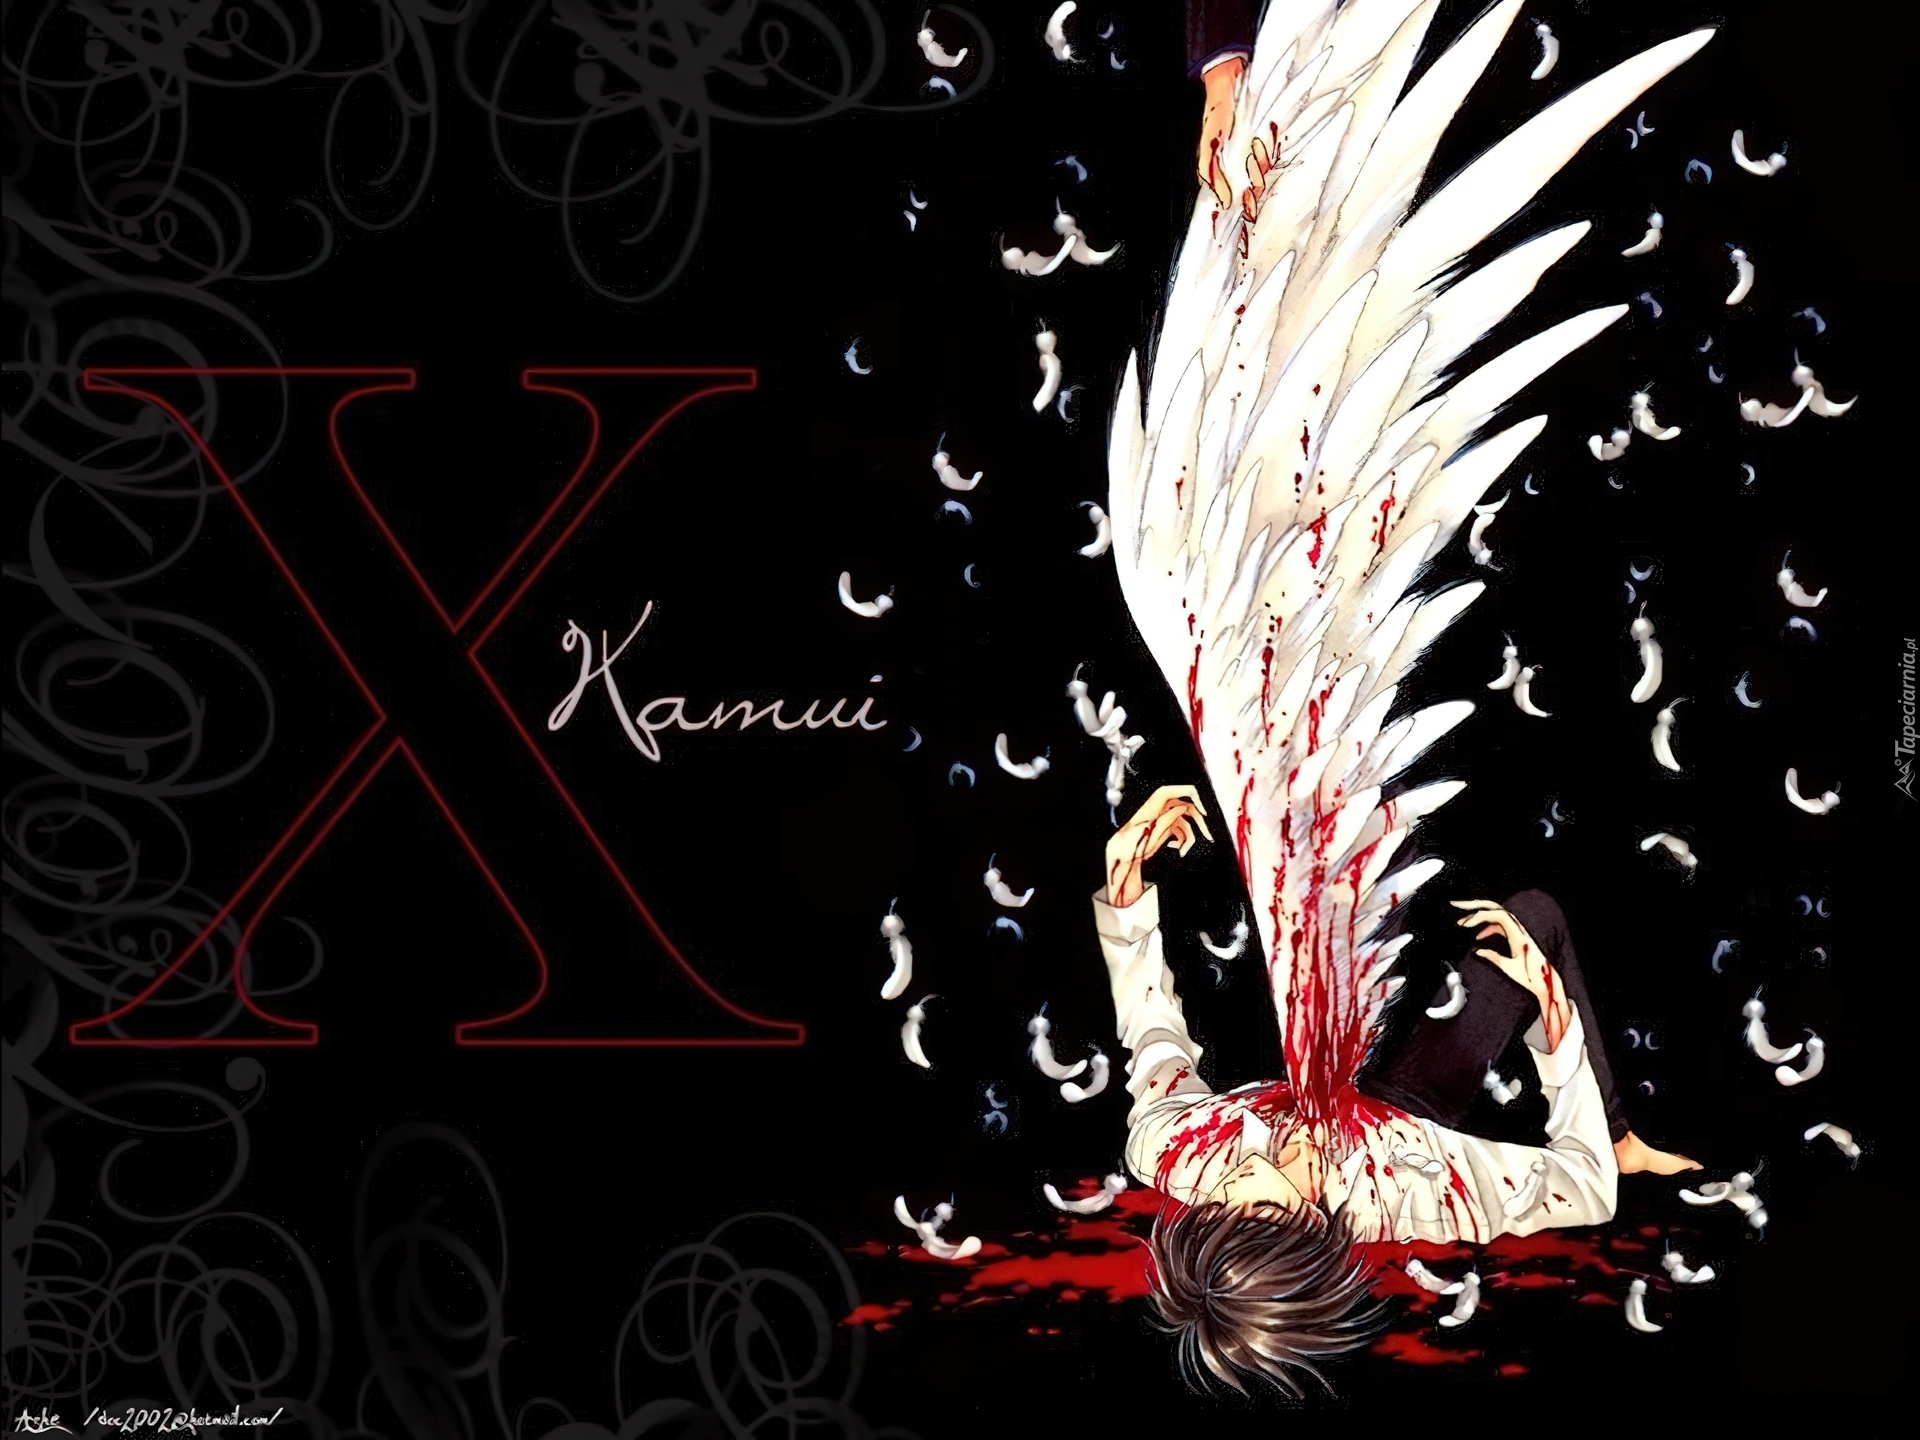 X, skrzydło, krew